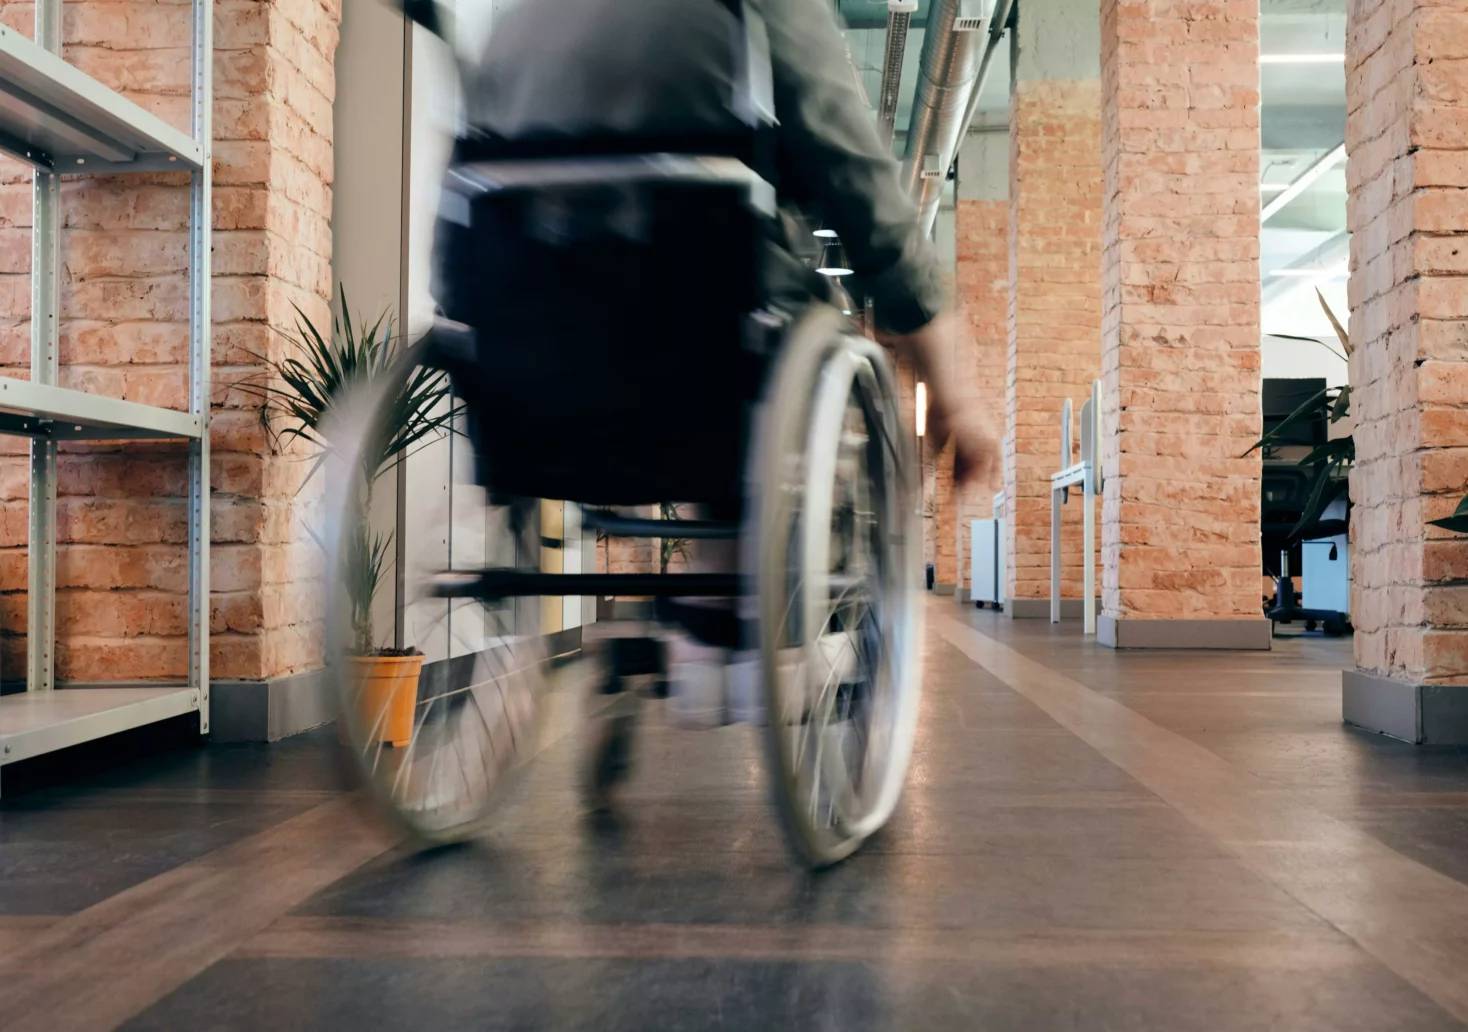 Ein Bild auf 5min.at zeigt eine Person in einem Rollstuhl, die durch einen Gang rollt.